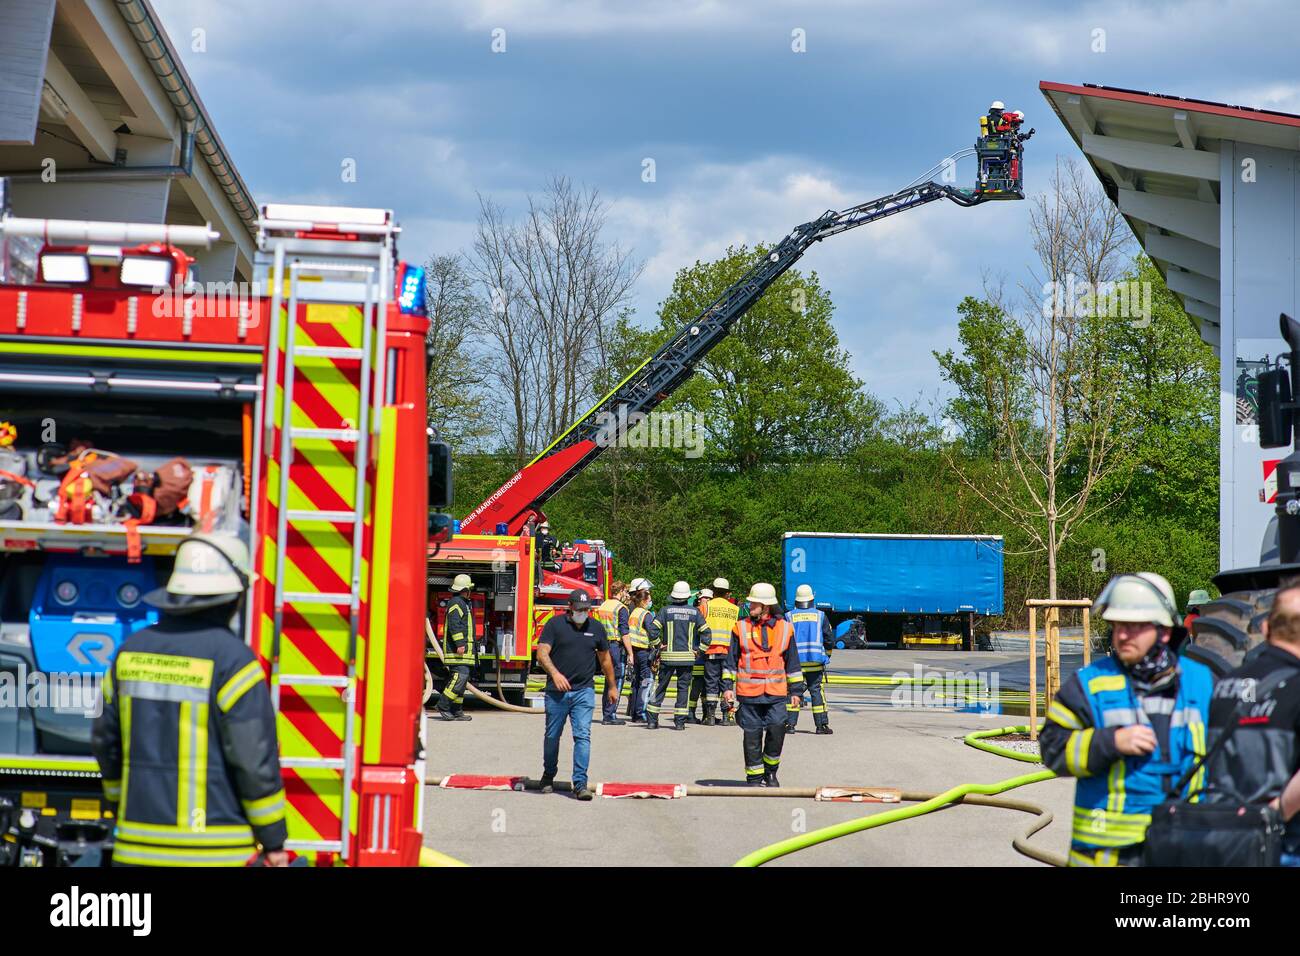 Altdorf, 27. April 2020. Die Feuerwehr löscht den Brand in einer Photovoltaikanlage, Solardach im Industriegebiet am 27. April 2020 in Altdorf. © Peter Schatz / Alamy Live News Stockfoto